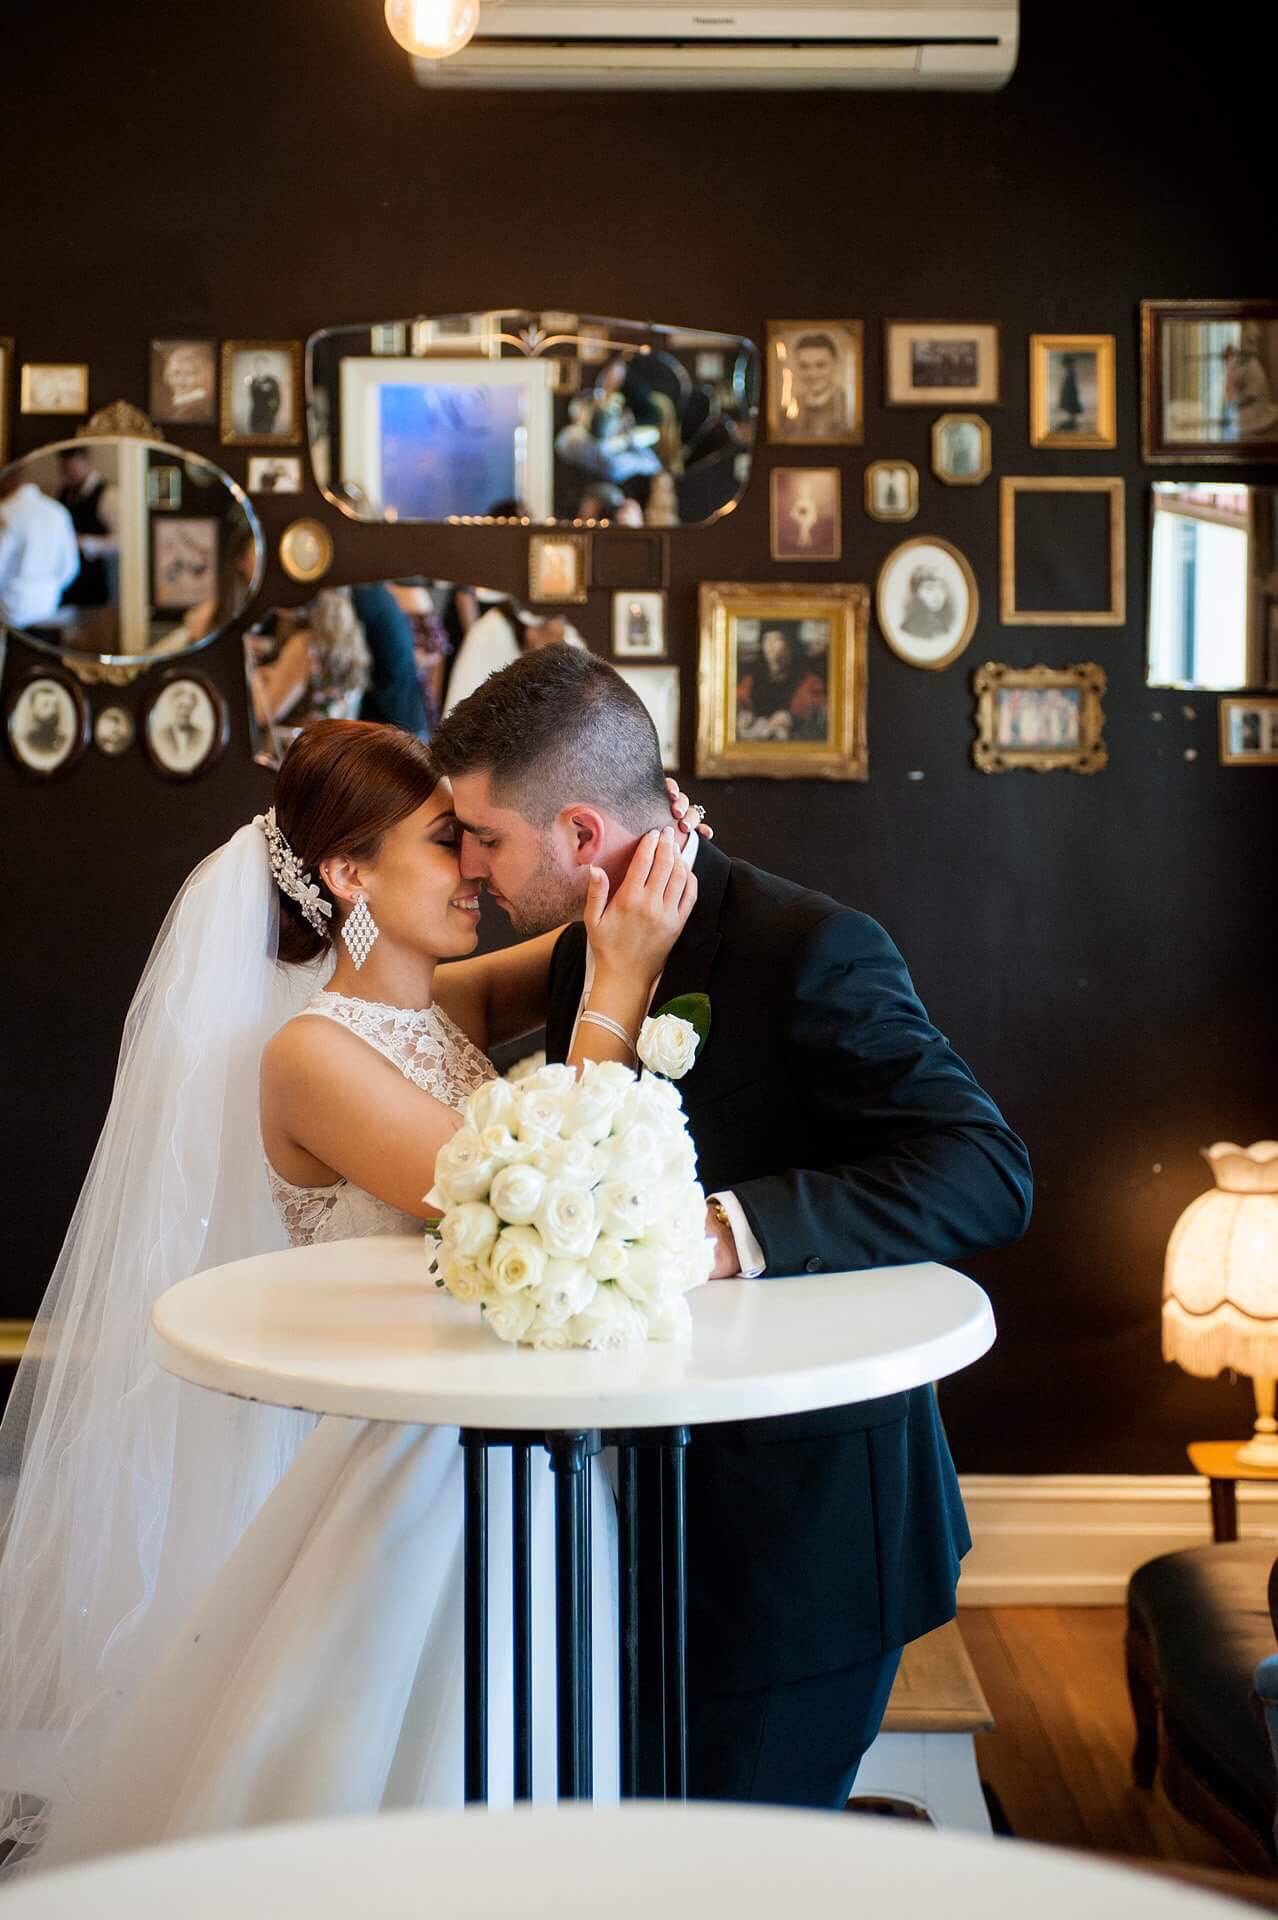 traditional church real wedding greek orthodox ferrari formalwear & bridal